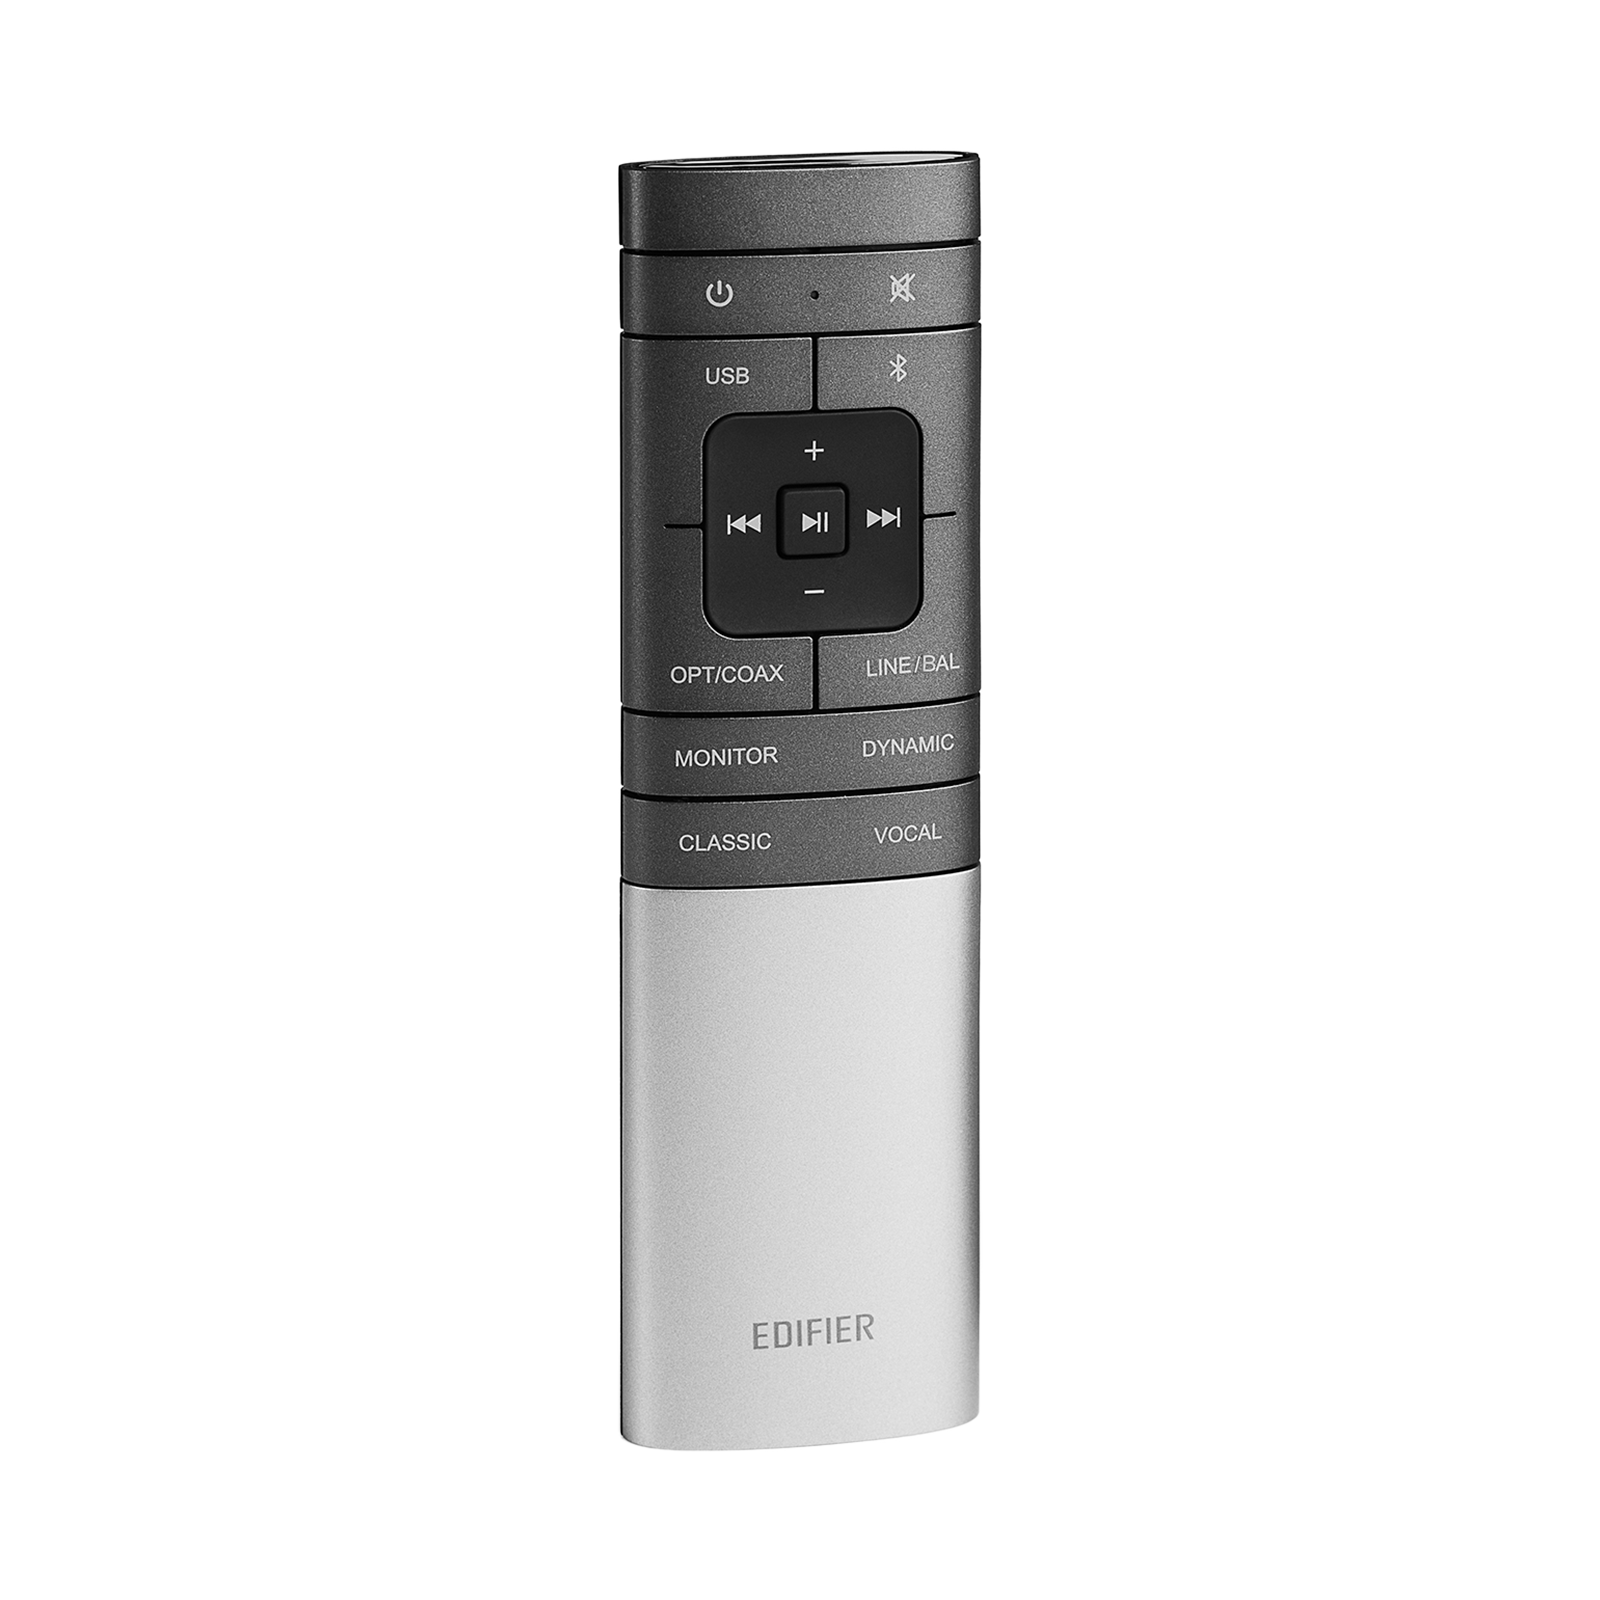 Remote RCA10B-S3000Pro